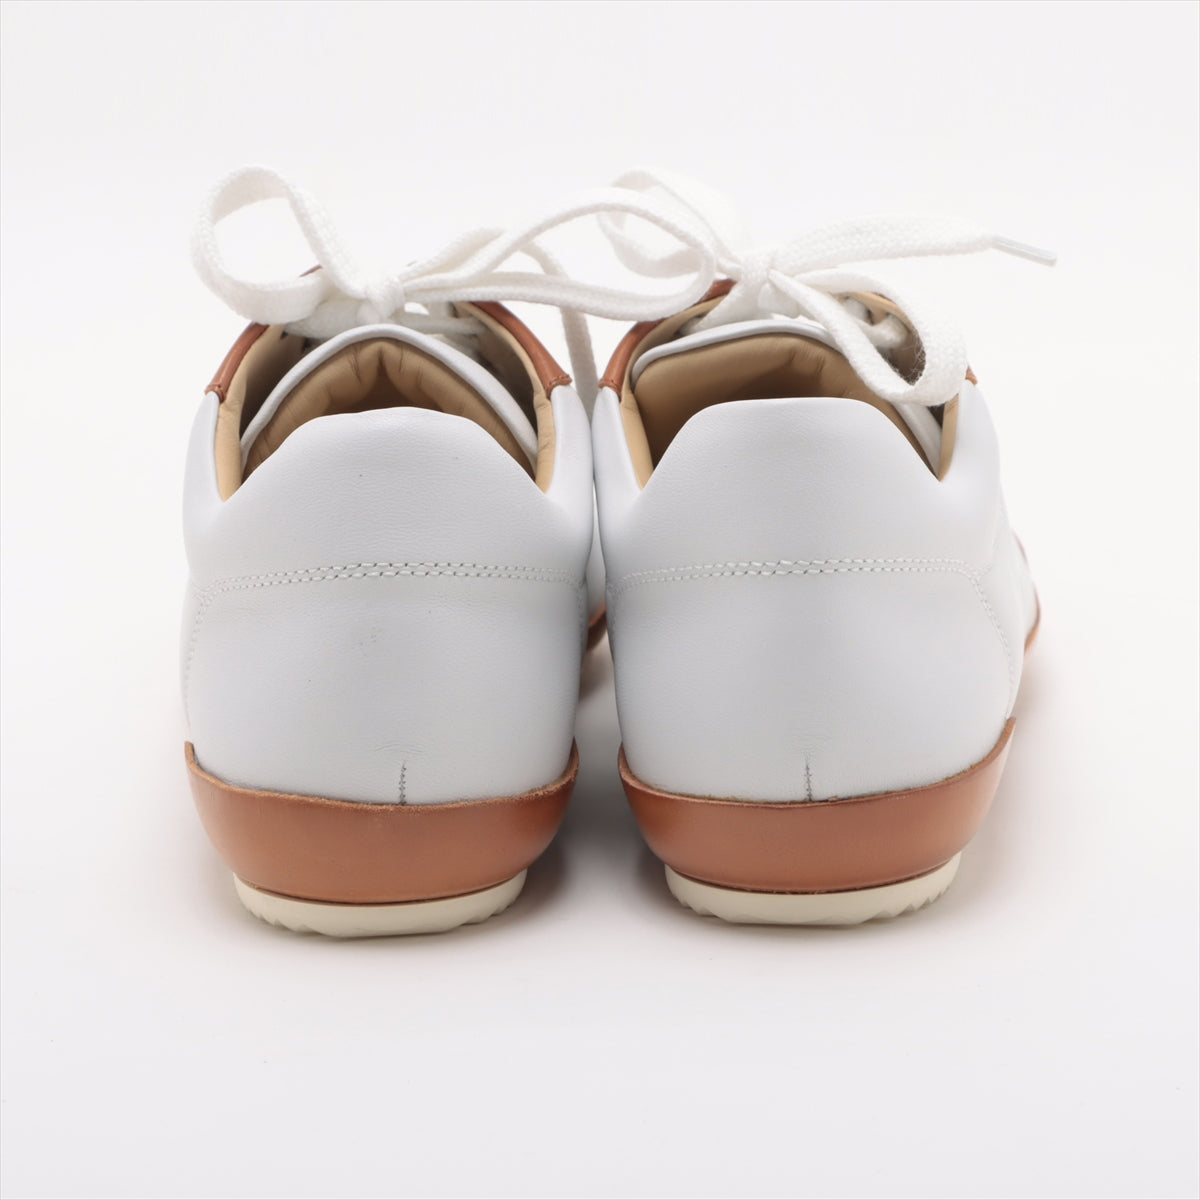 Hermès Leather Sneakers 37 1/2 Ladies' White x brown